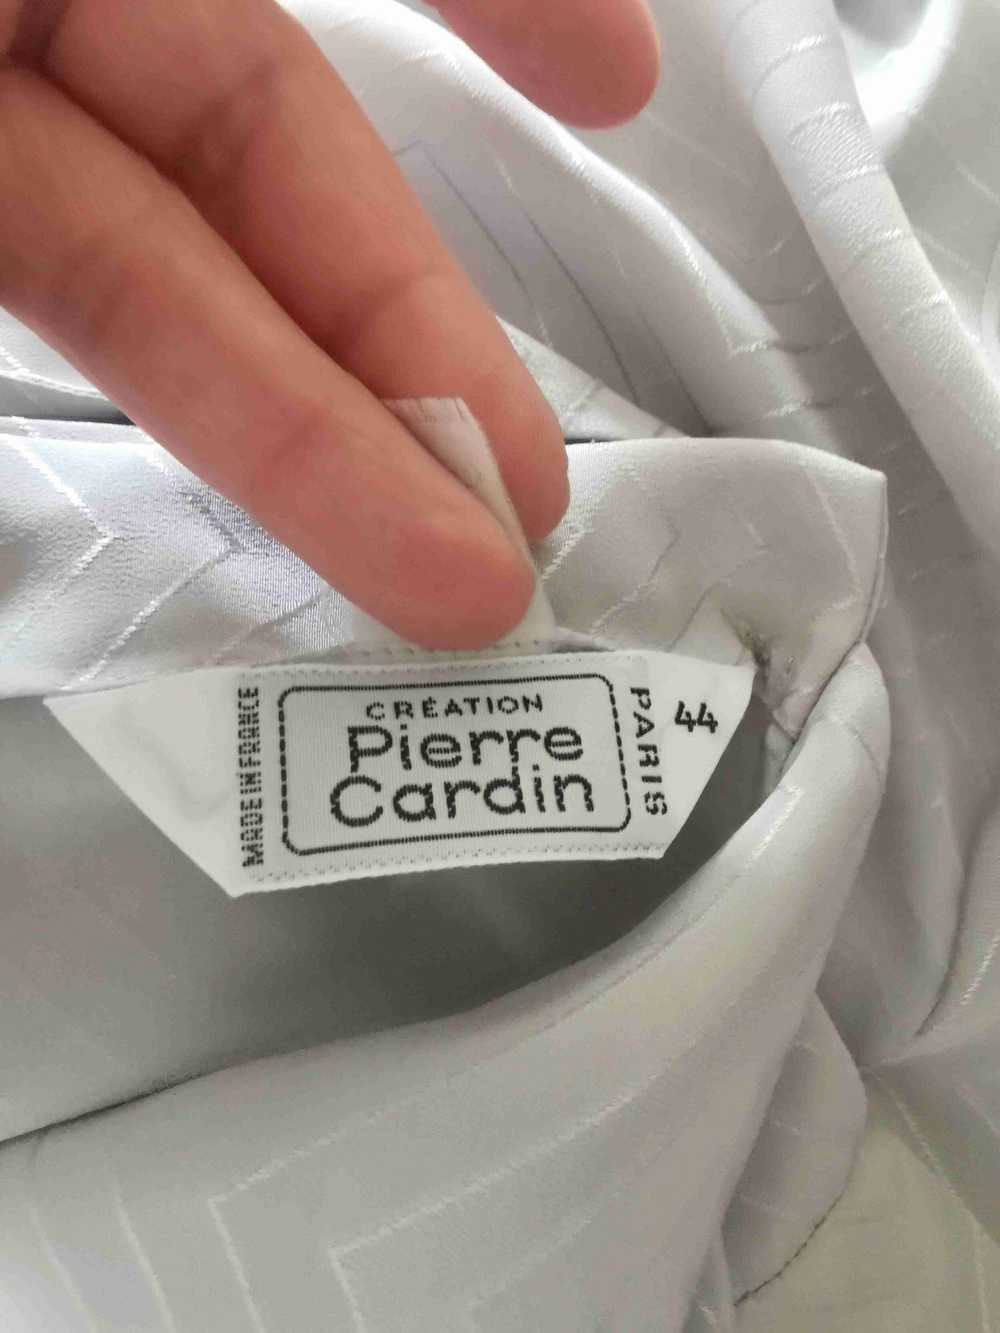 Pierre Cardin blouse - Pierre Cardin pearl gray b… - image 3